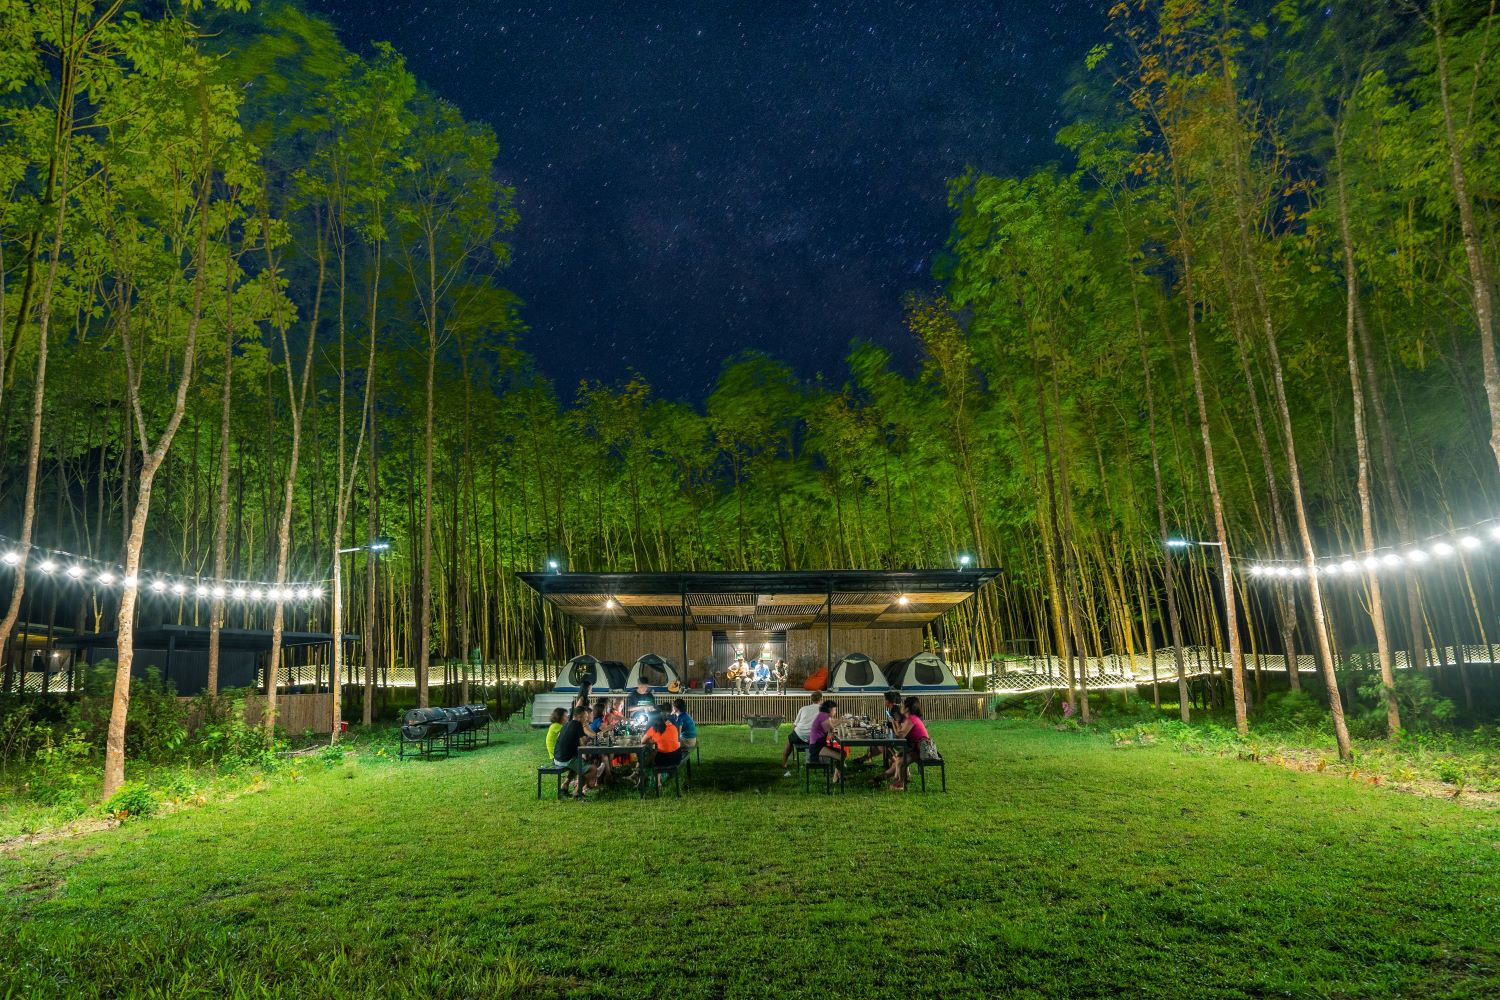 Ăn tối trên bãi cỏ dưới bầu trời đầy sao tại Blue Diamond Camp.